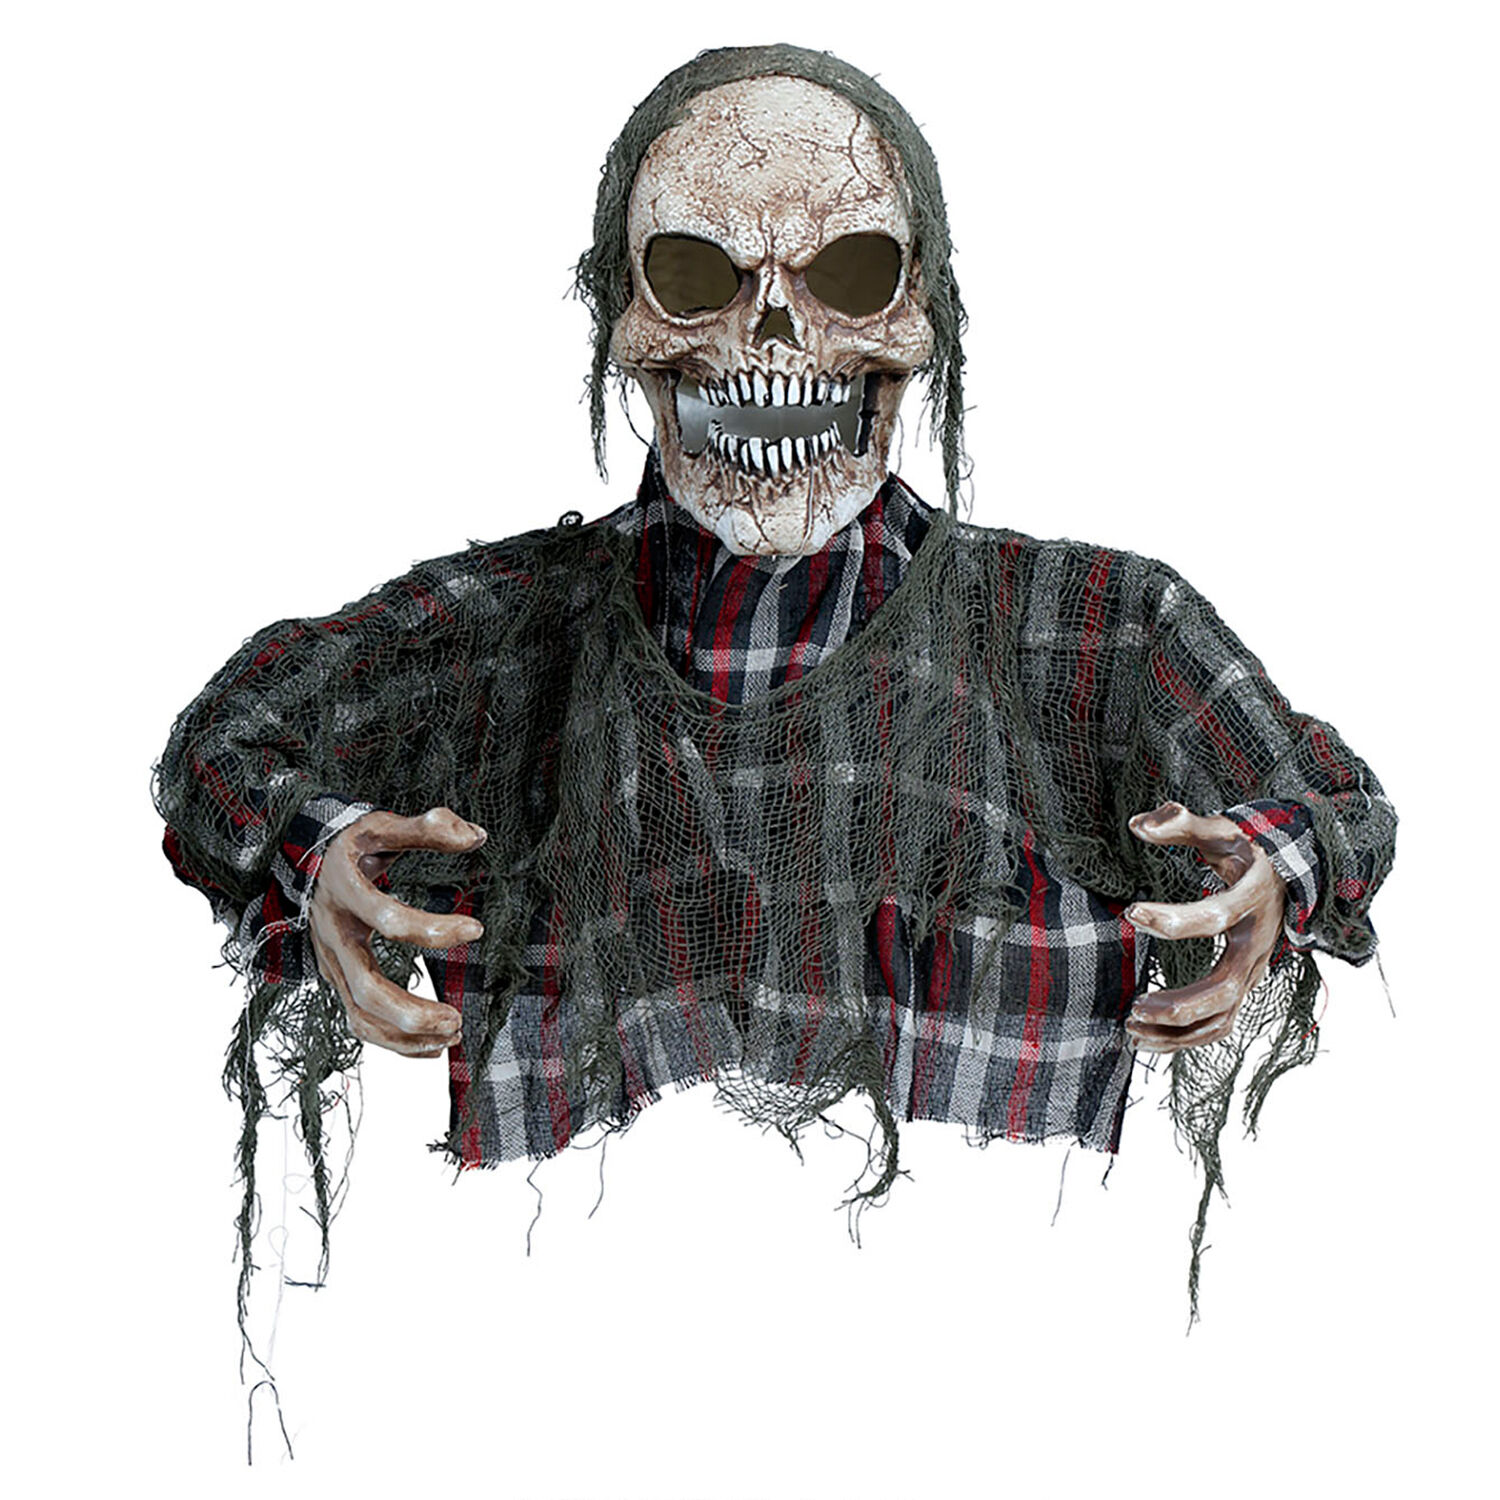 NEU Halloween-Deko-Figur Zombie-Oberkörper, ca. 120cm, mit Licht, Sound und Bewegung